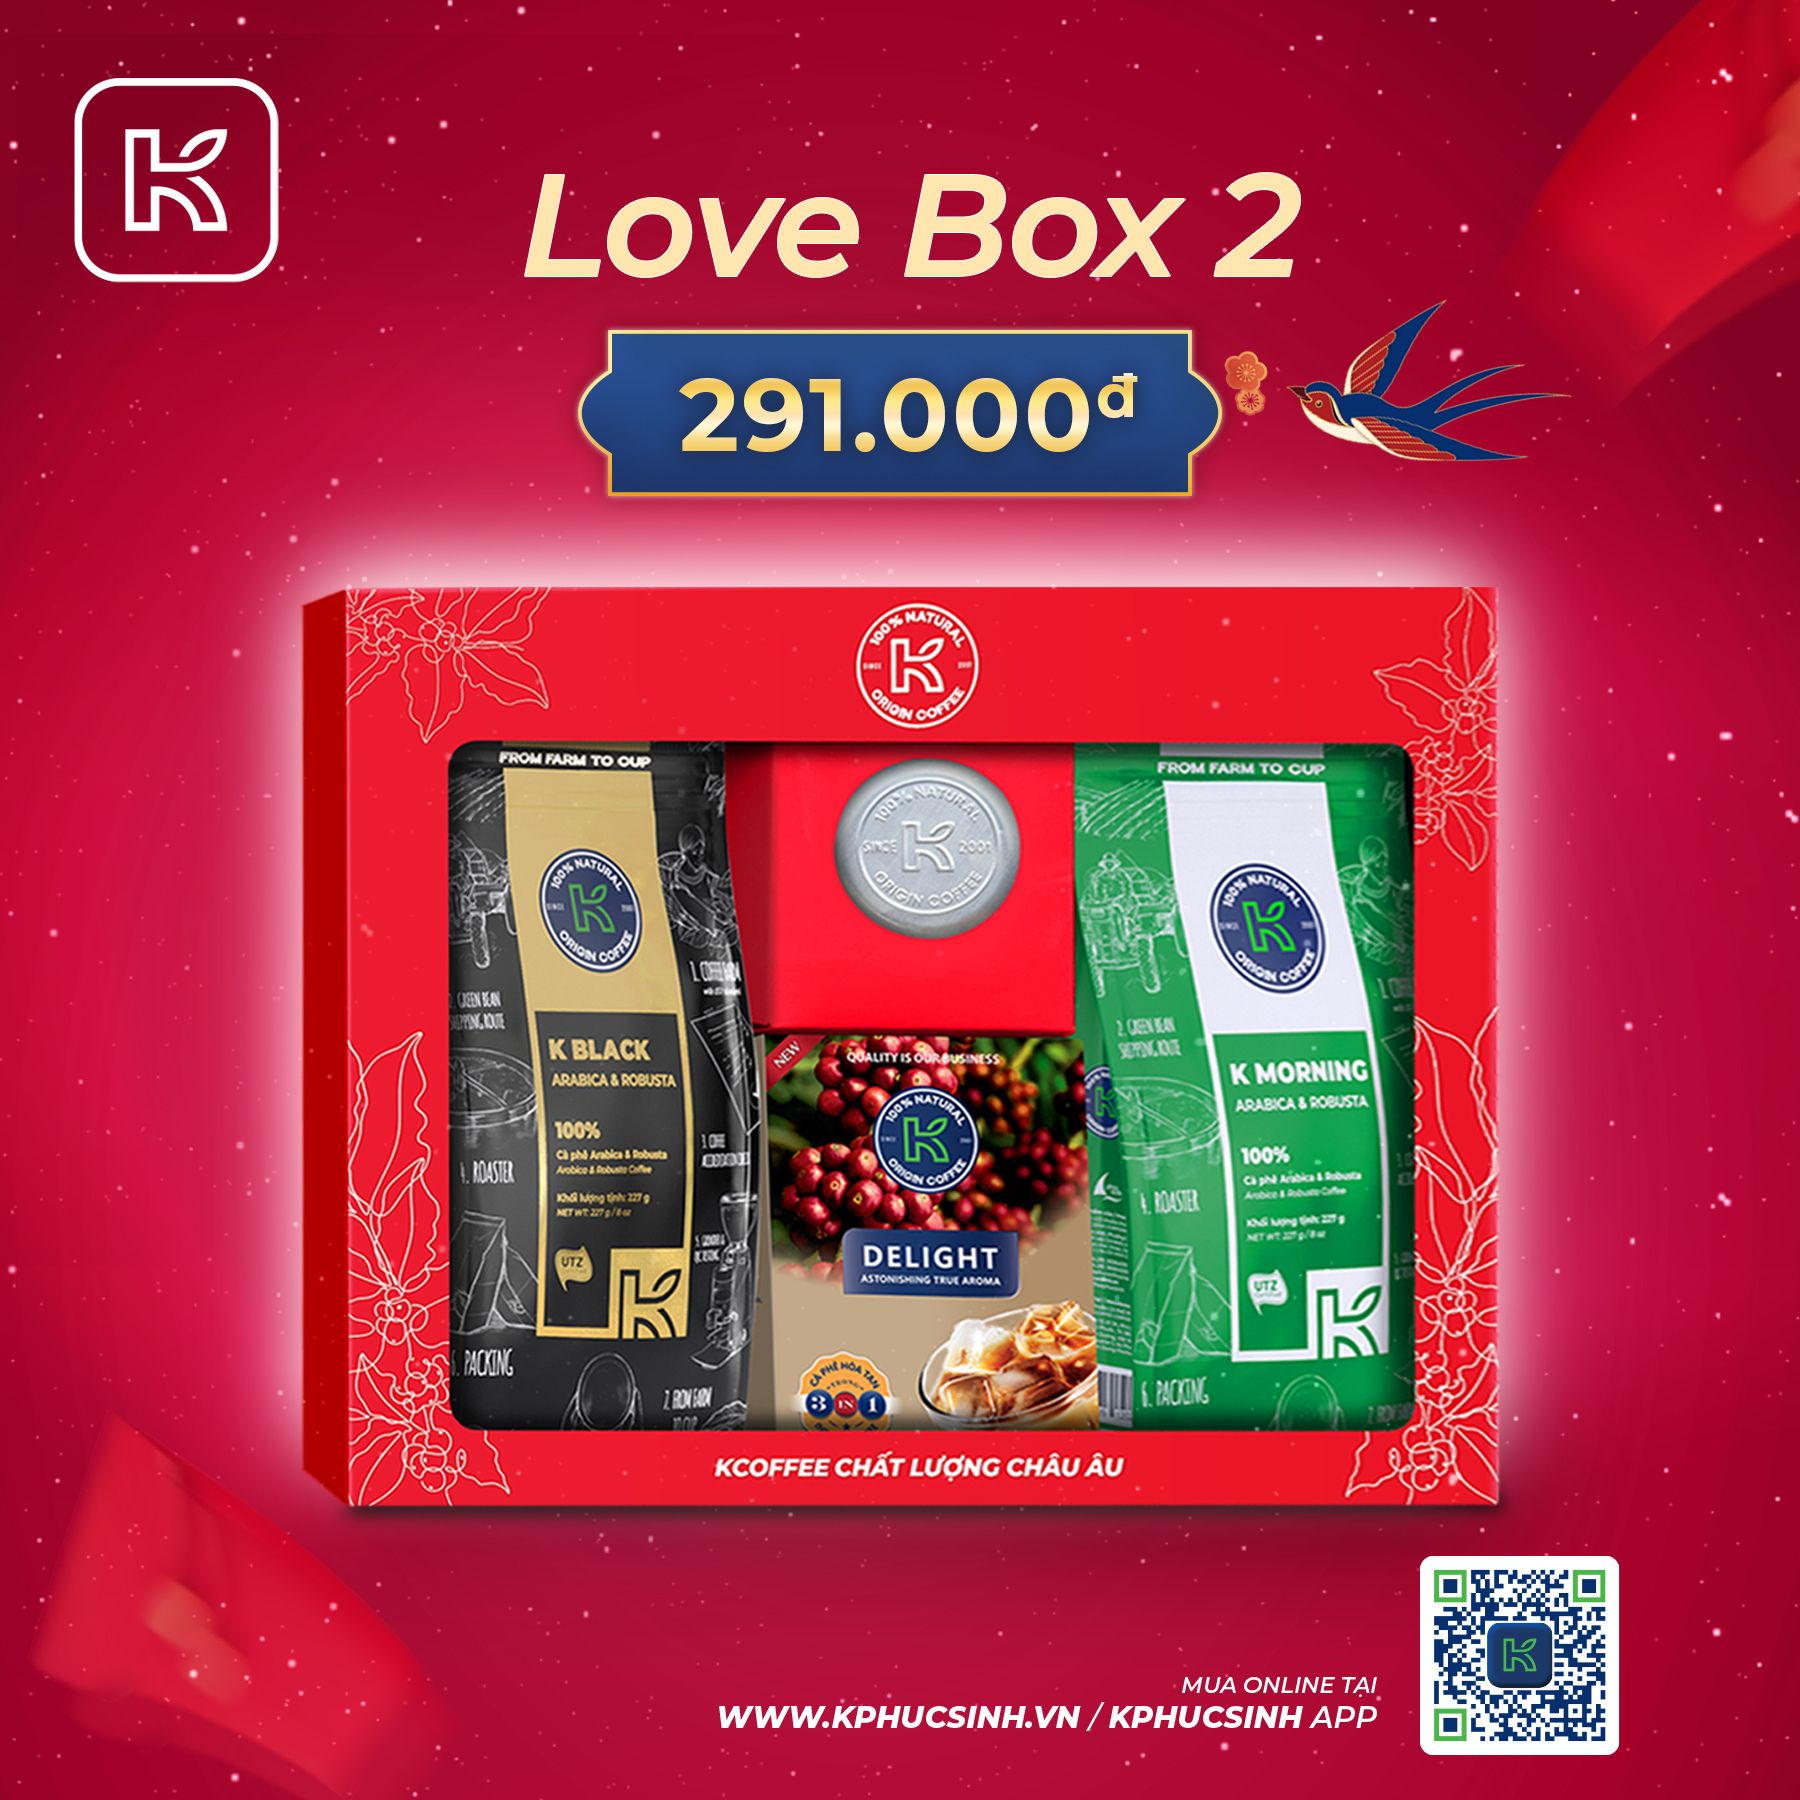 GIFTSET CÀ PHÊ LOVE BOX 2